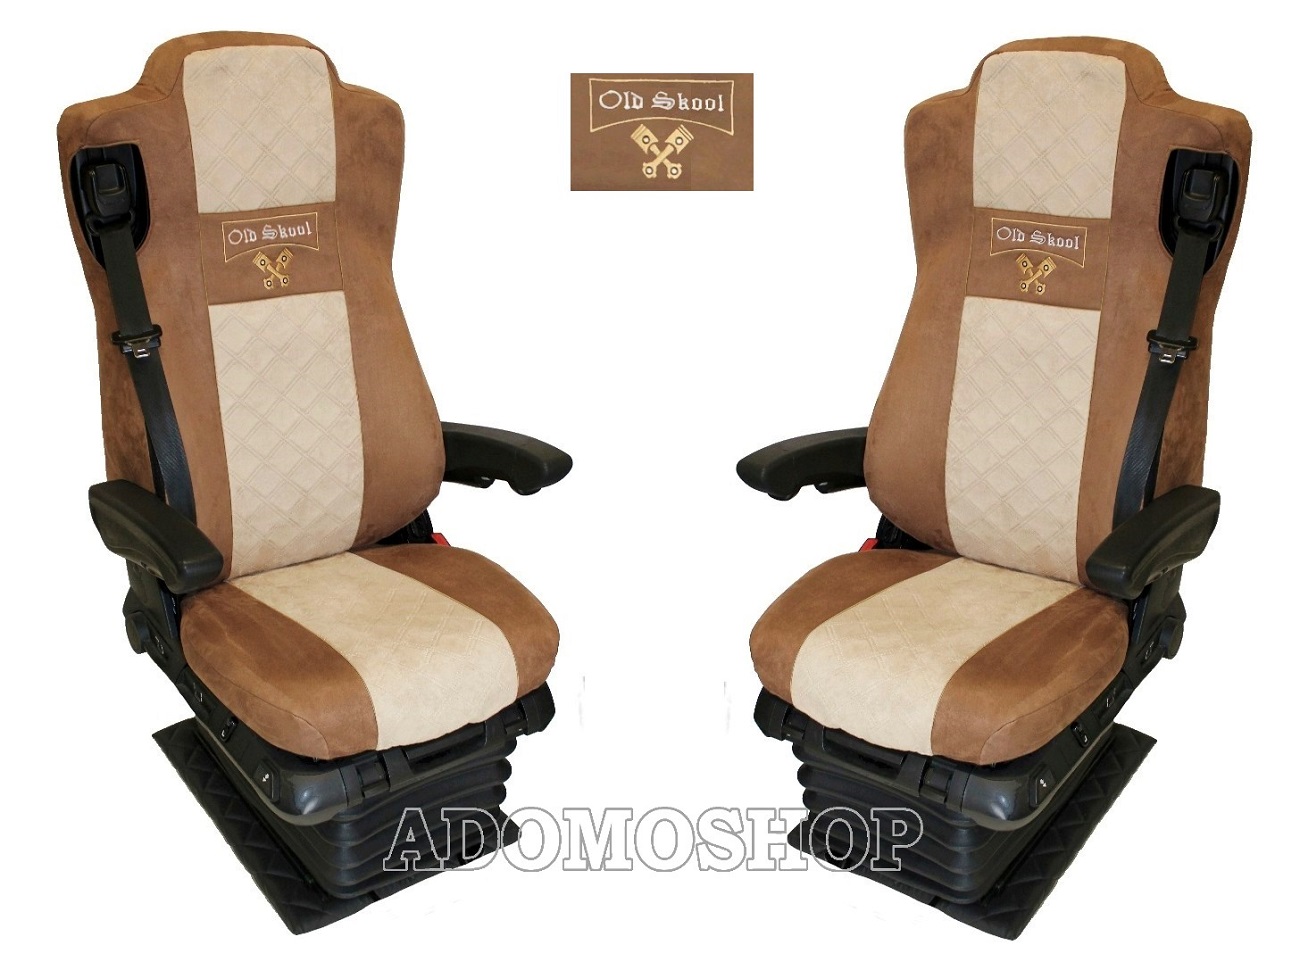 Sitzbezüge für Actros MP5 und MP4, Beifahrersitz luftgefedert braun-beige,  Old Skool